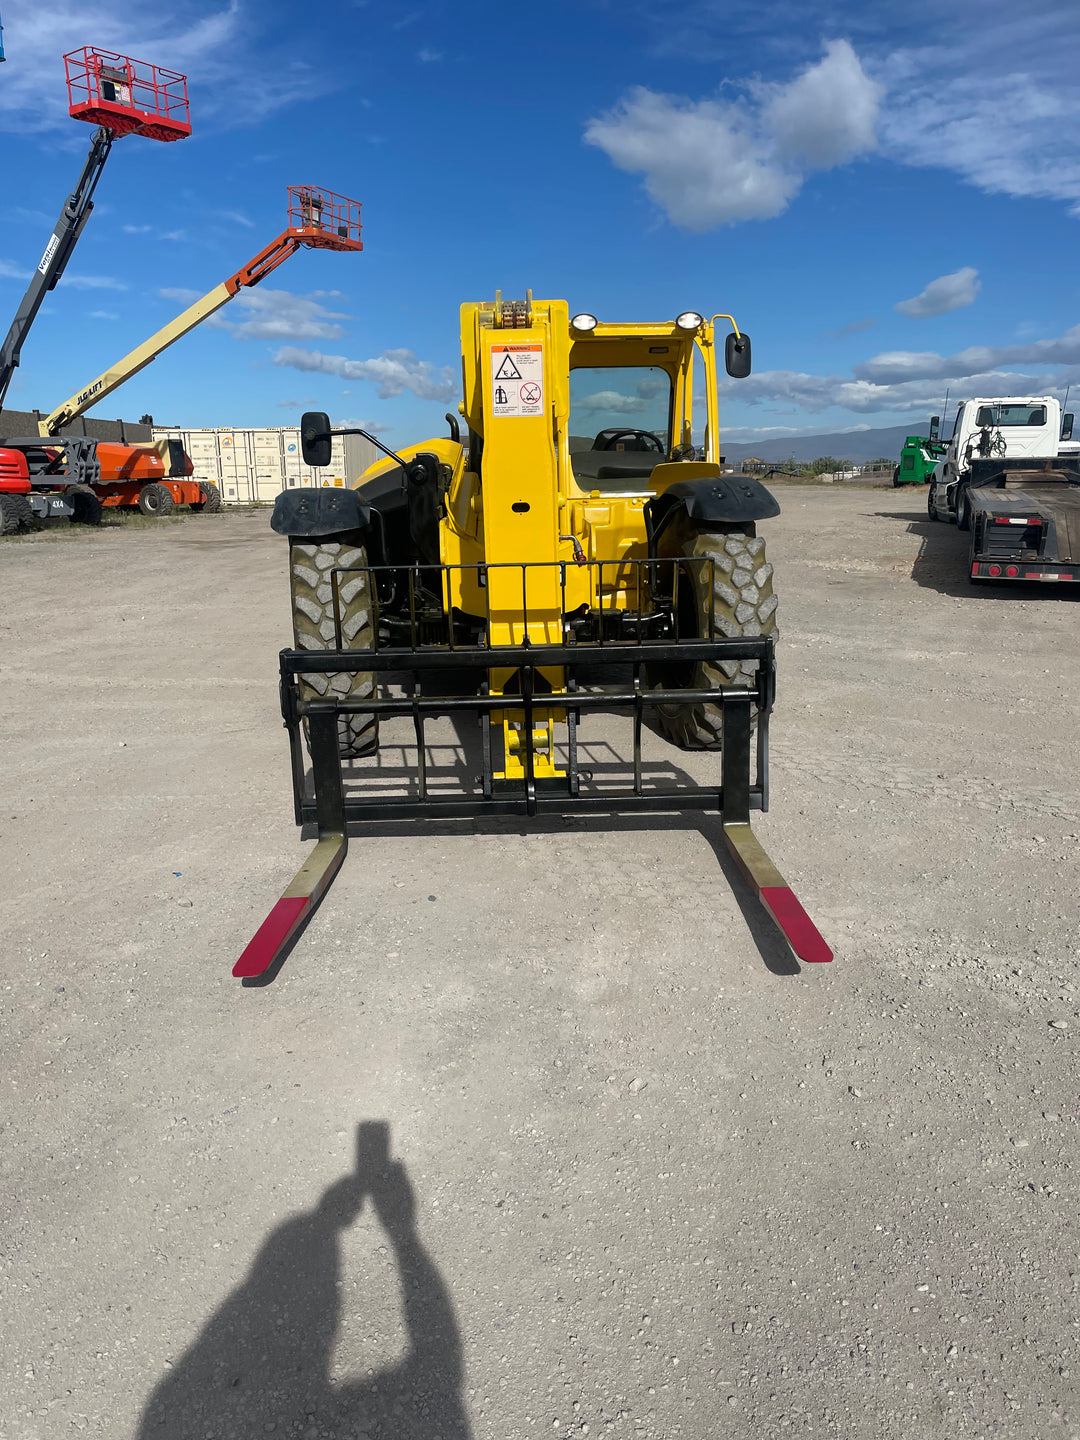 42' 2018 JCB 509-42 9K 42' Reach Forklift Telehandler For Sale -Hrs. 2406- (id.4593)